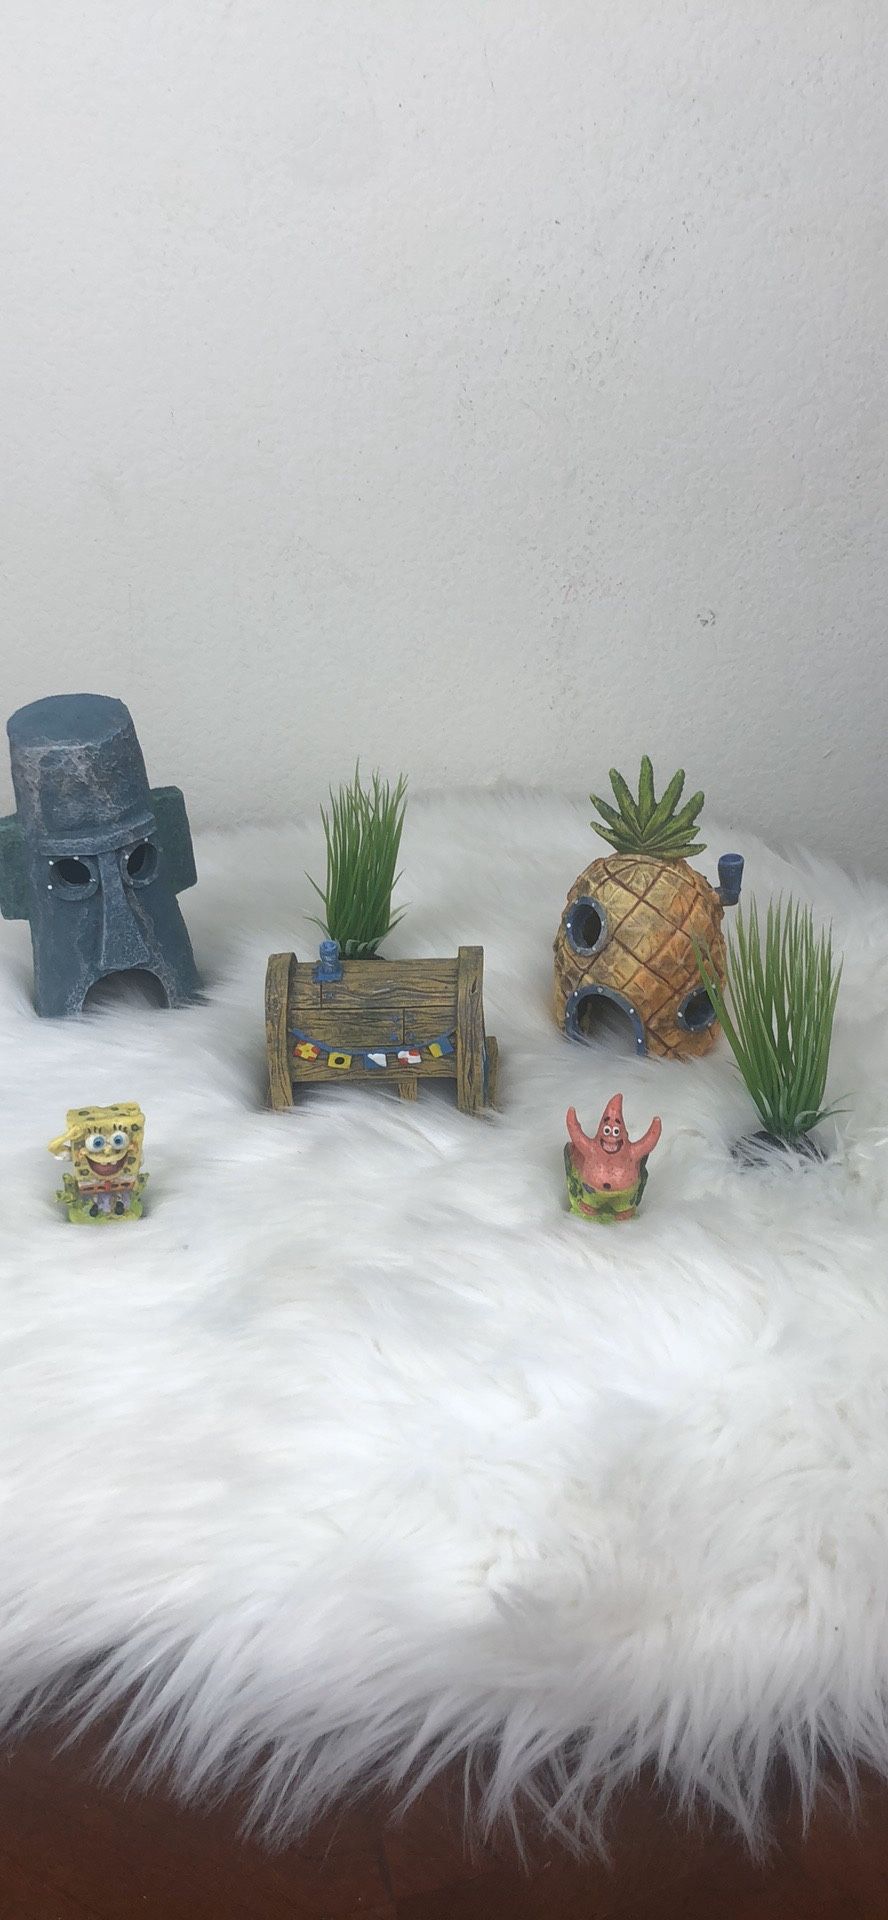 SpongeBob fish tank ornaments